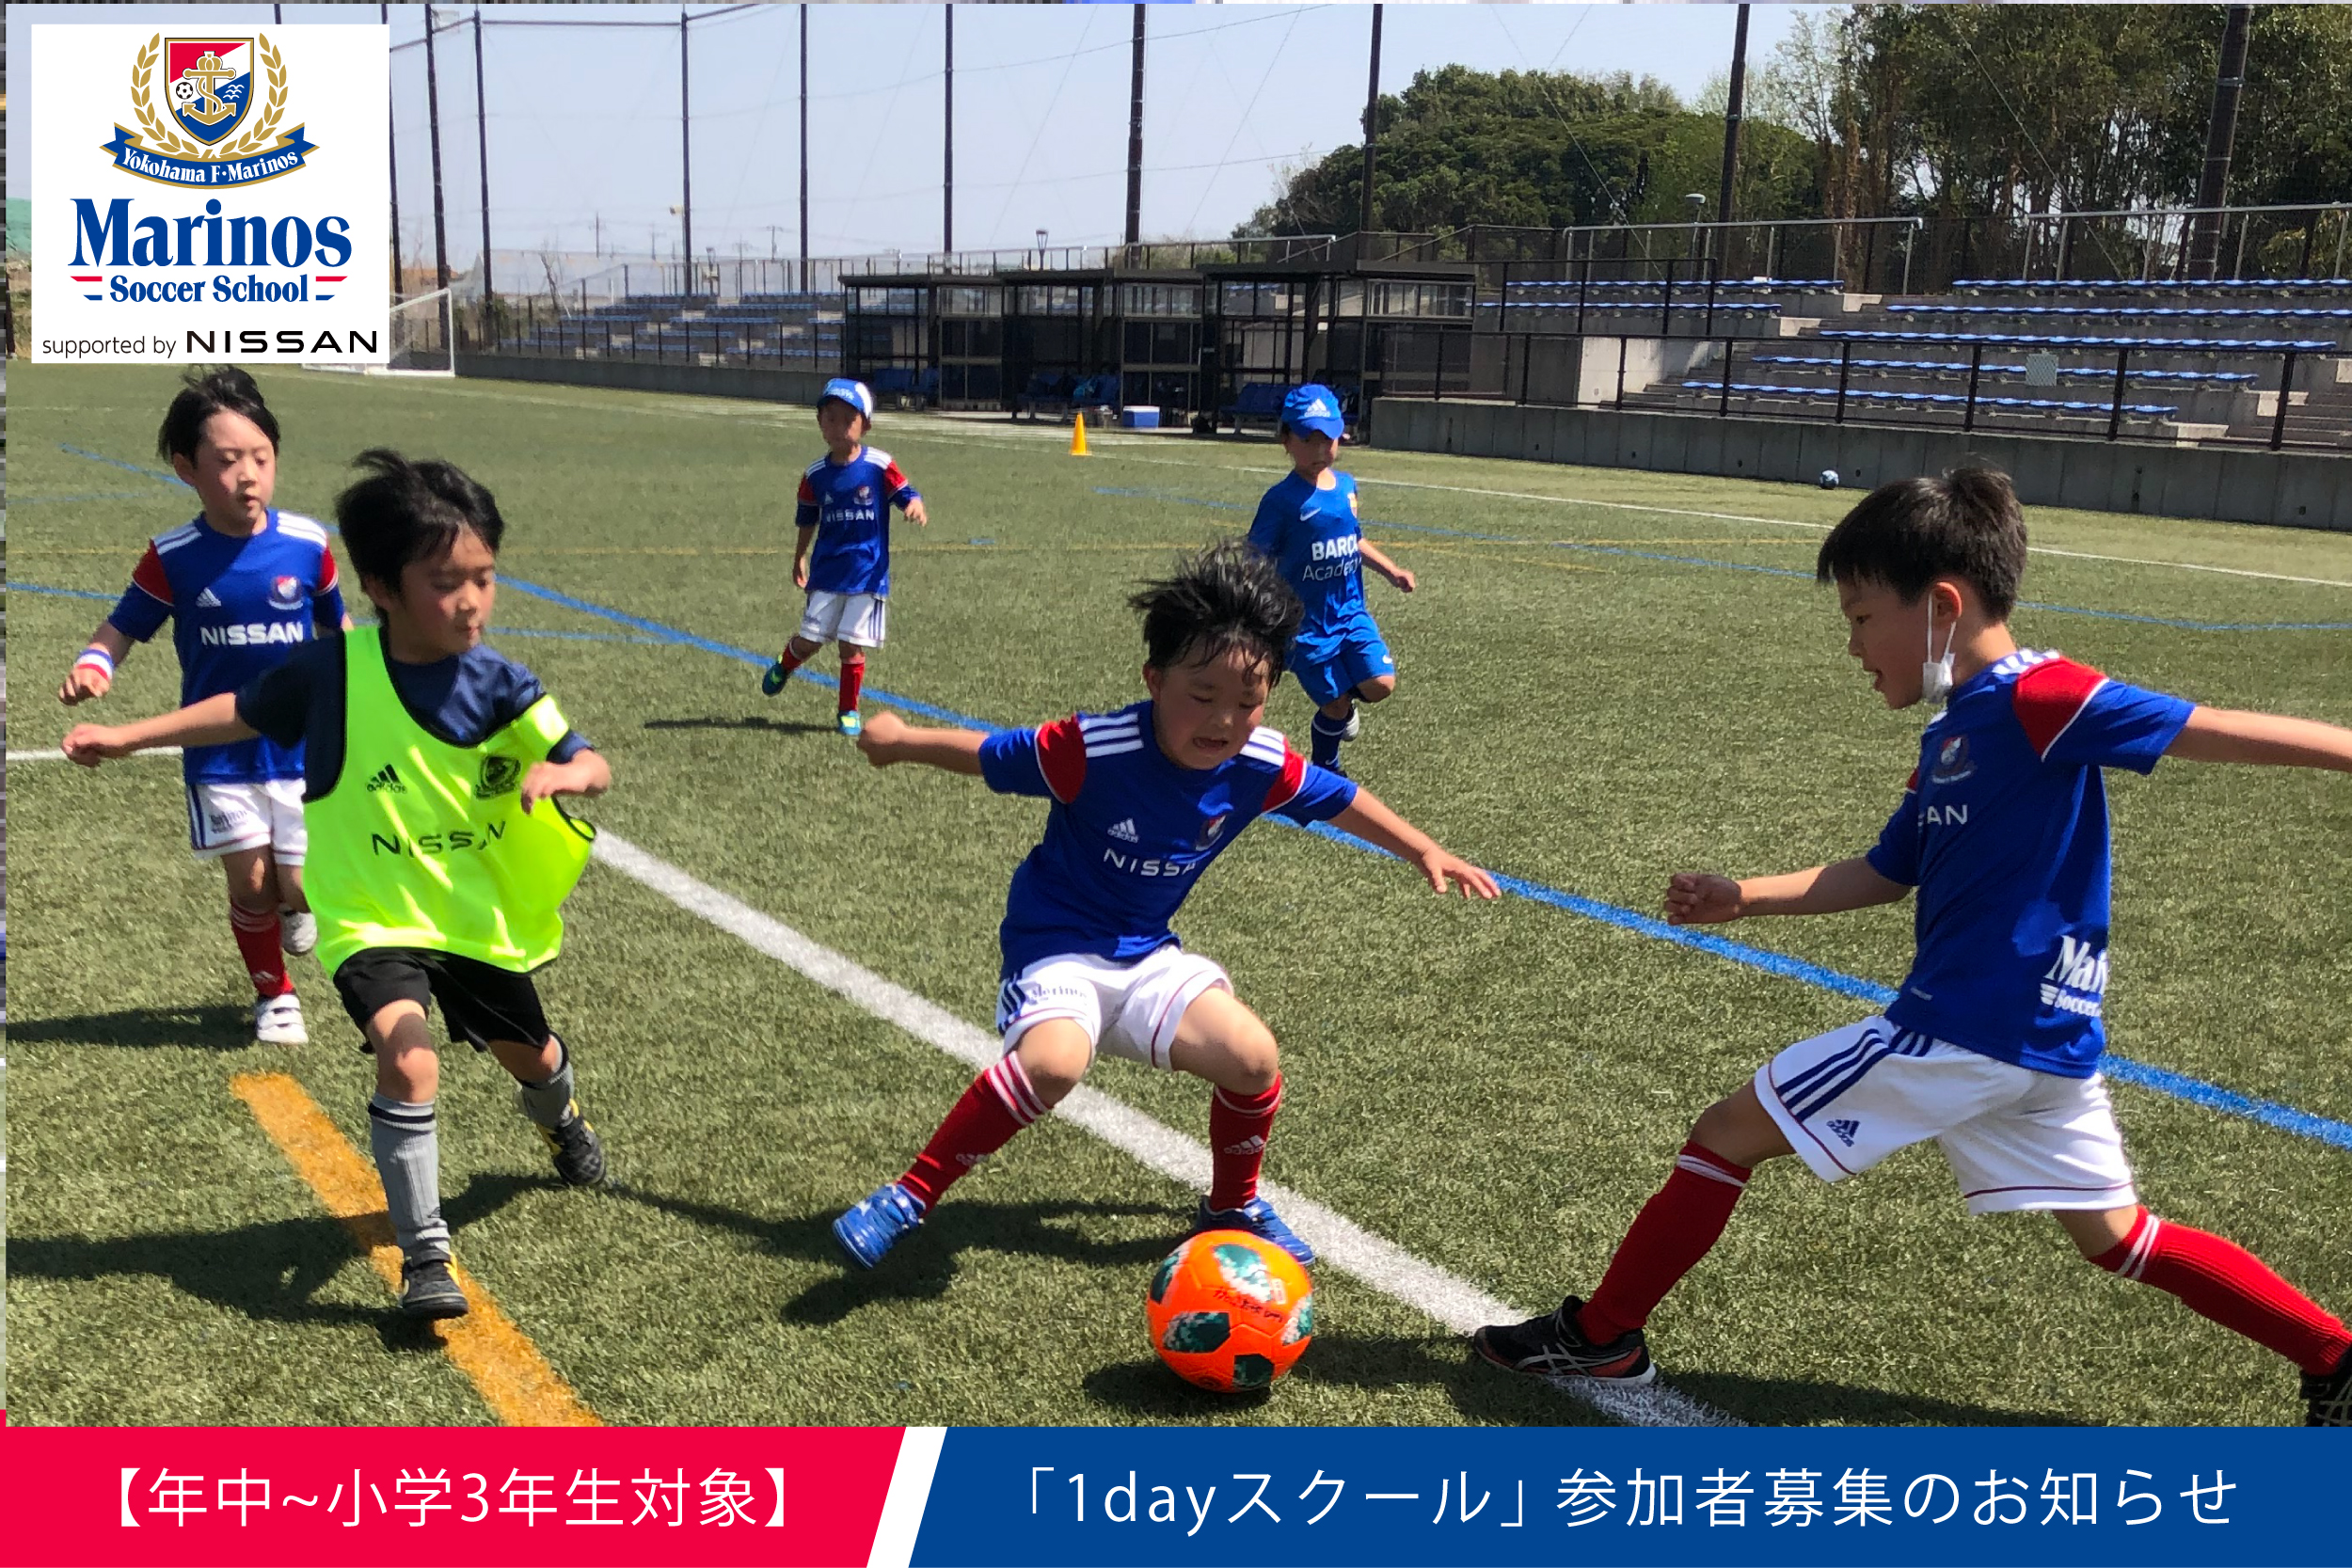 横浜FC「新型コロナウイルス感染症予防動画」配信のお知らせ